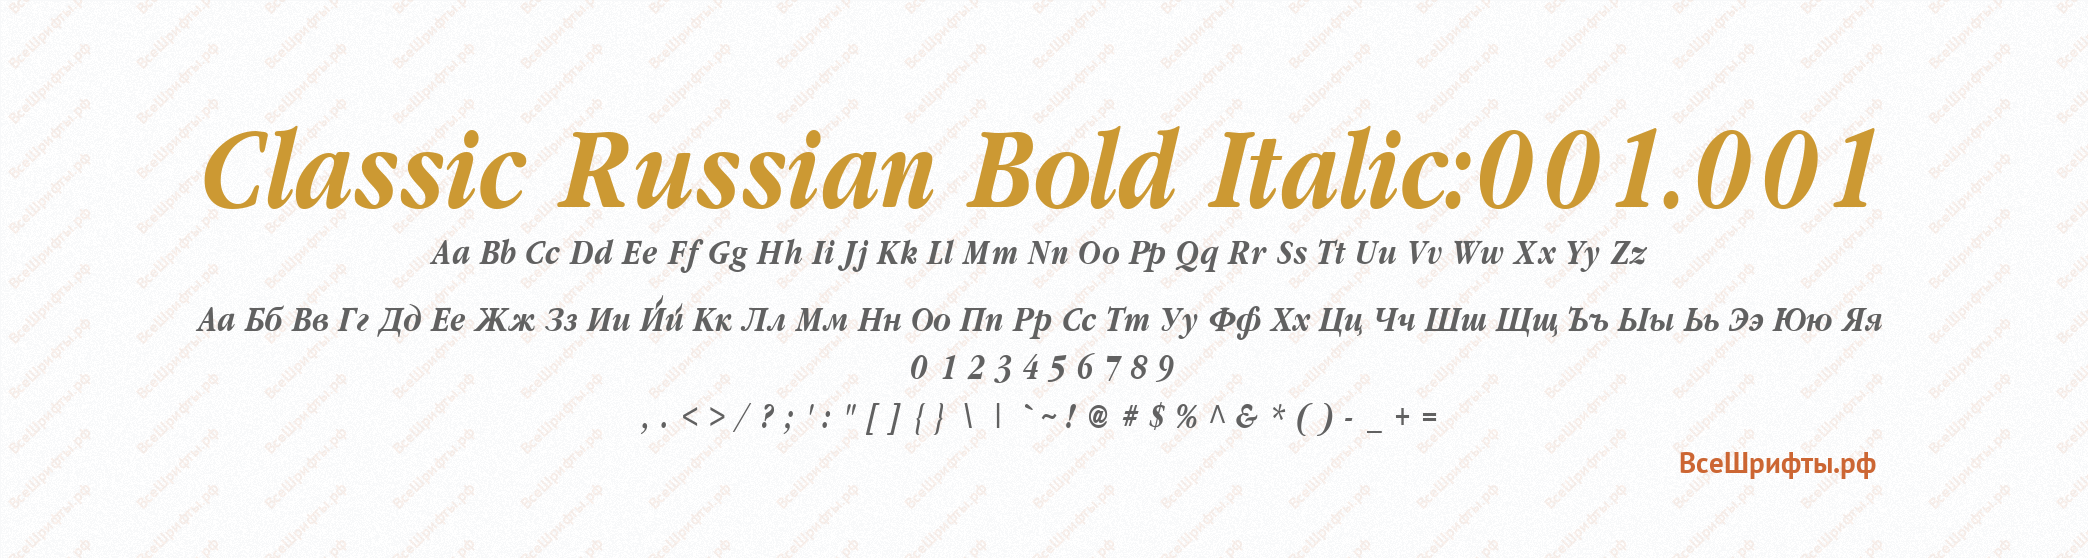 Шрифт Classic Russian Bold Italic:001.001